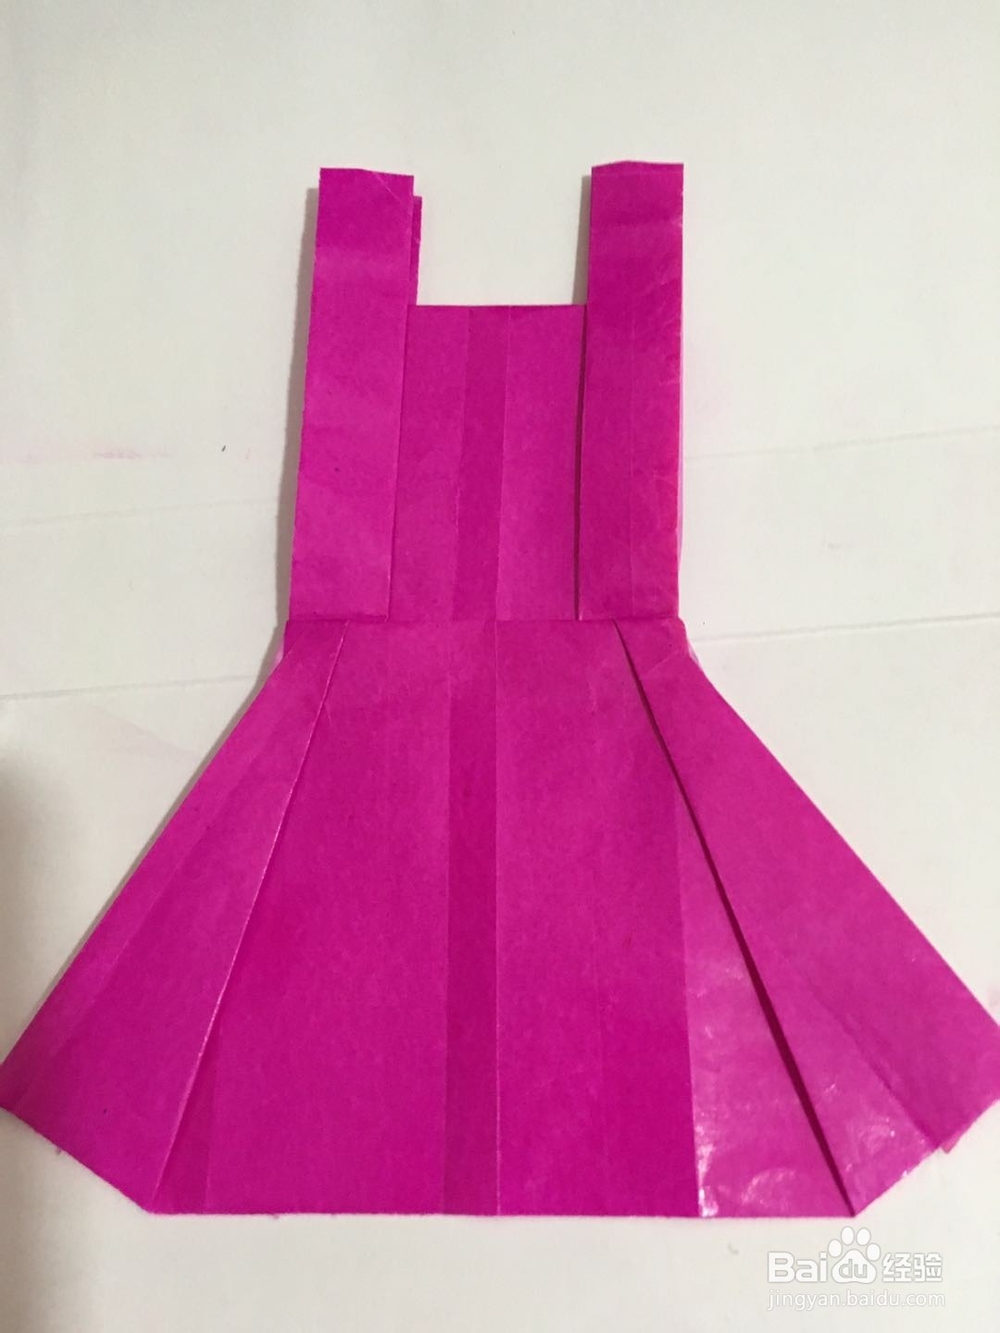 一件漂亮的芭比娃娃的裙子 怎样用彩纸折叠